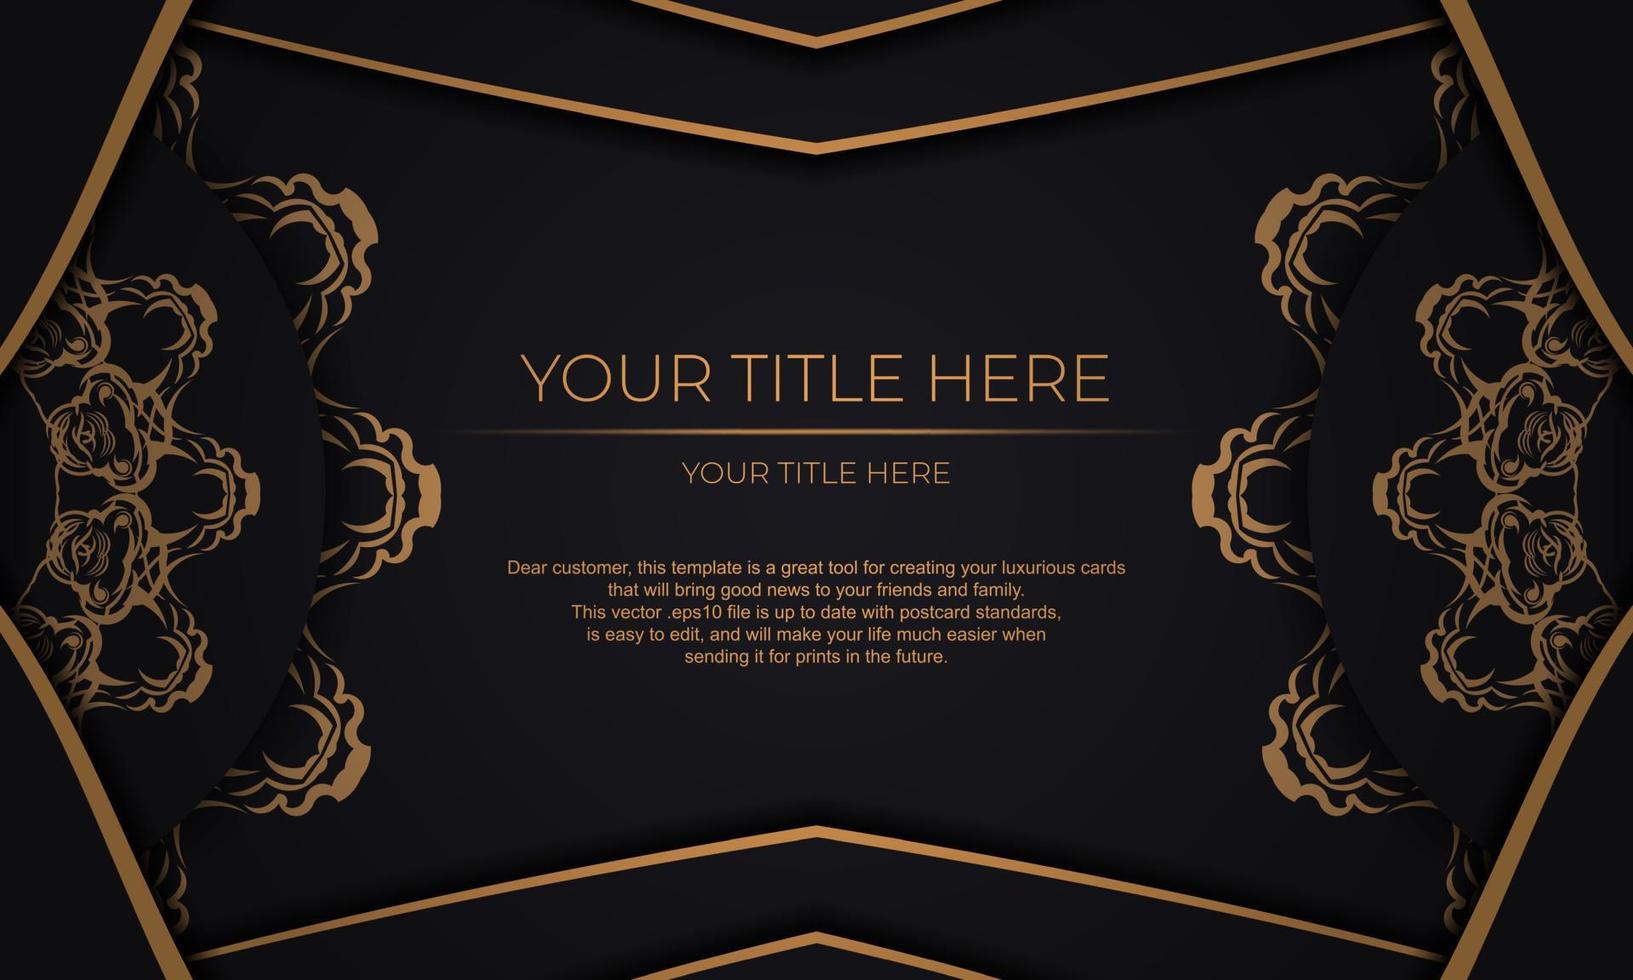 zwart vector banier met luxe goud ornamenten en plaats voor uw tekst. sjabloon voor ontwerp afdrukbare uitnodiging kaart met wijnoogst patronen.